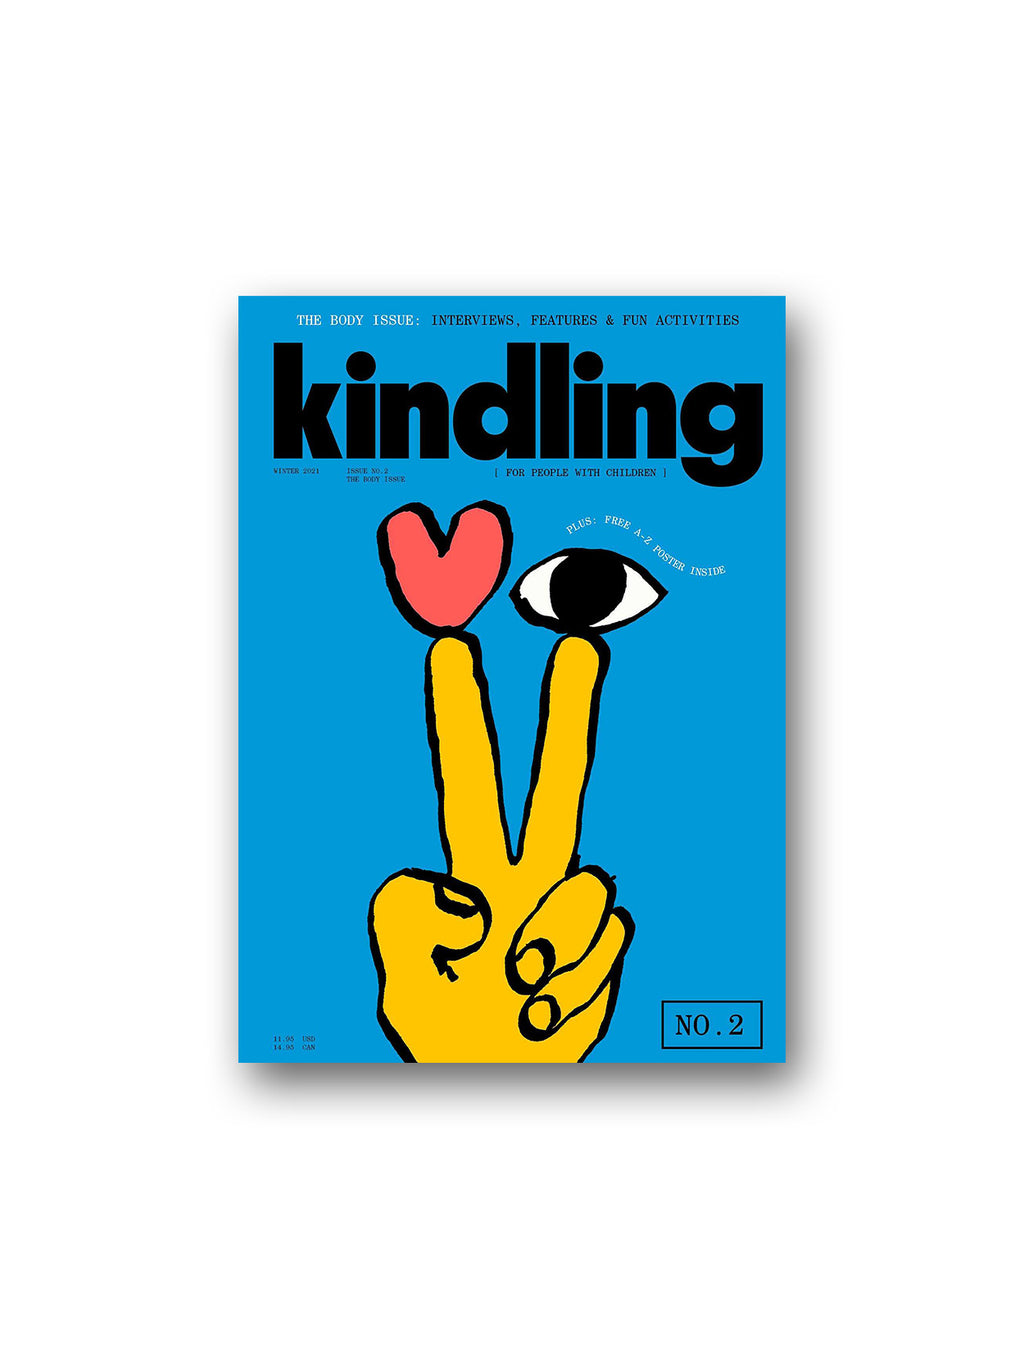 Kindling 02